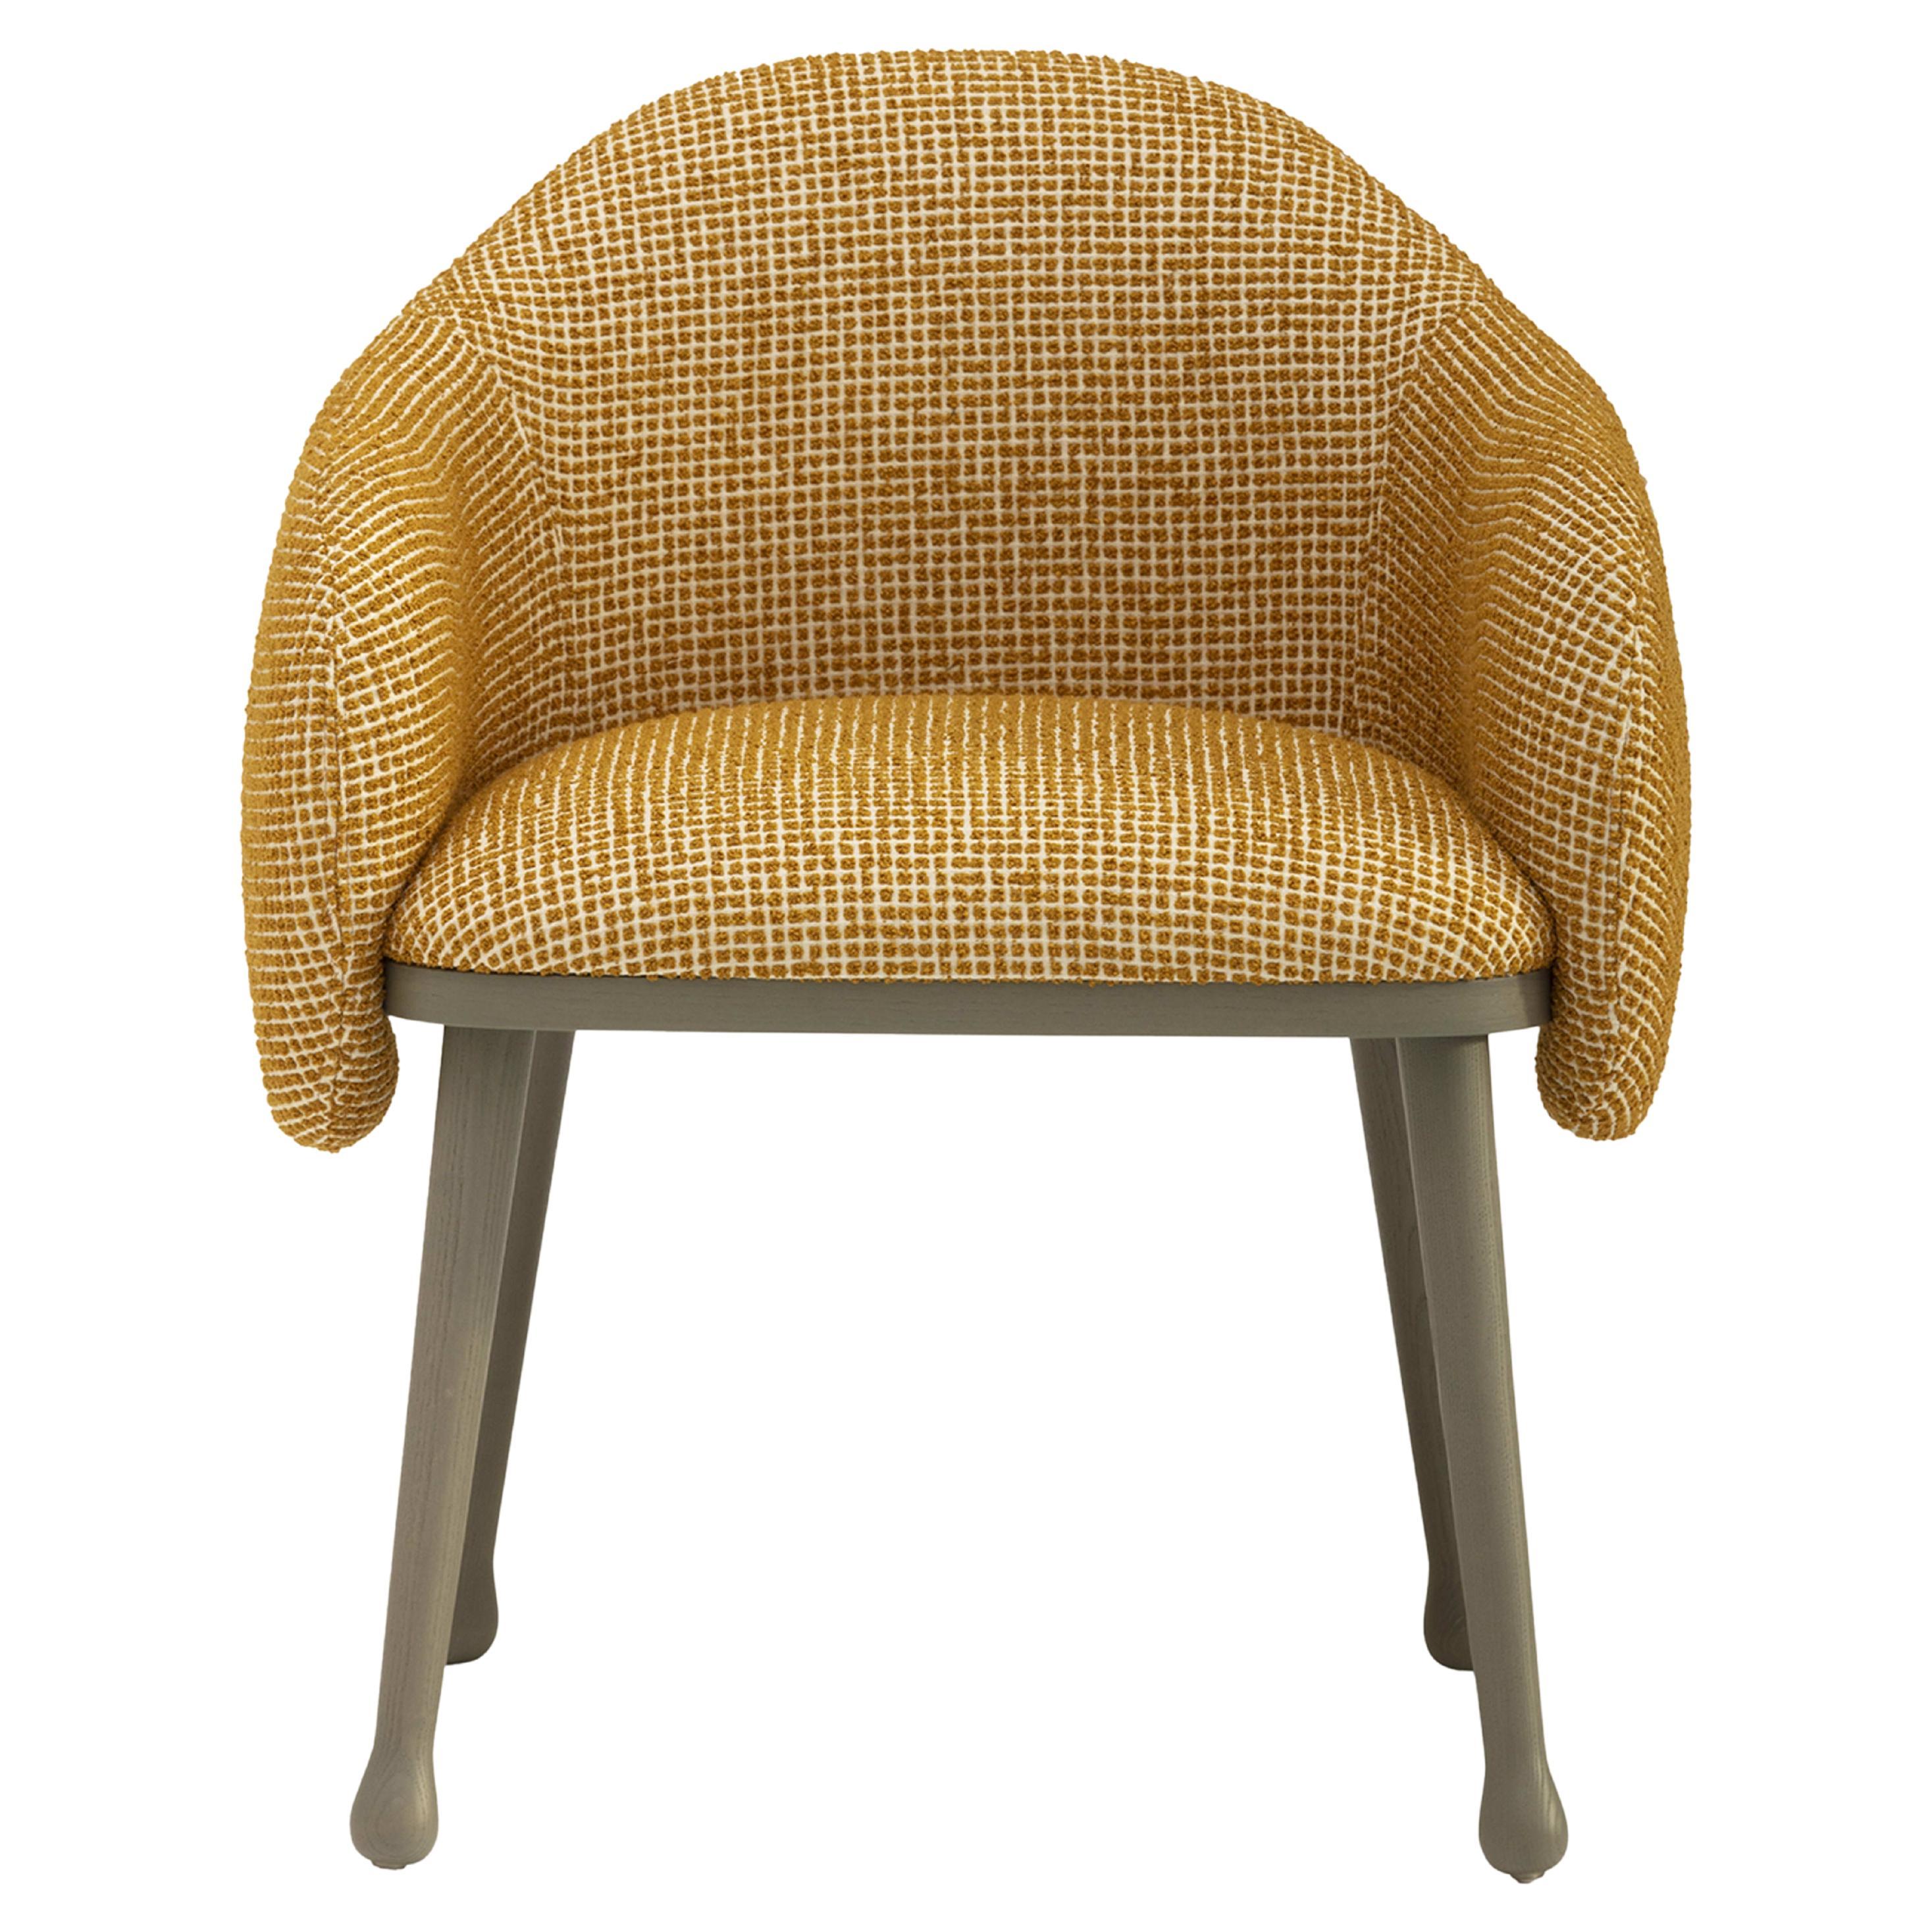 Corolla 270 Mustard Chair by Cristina Celestino